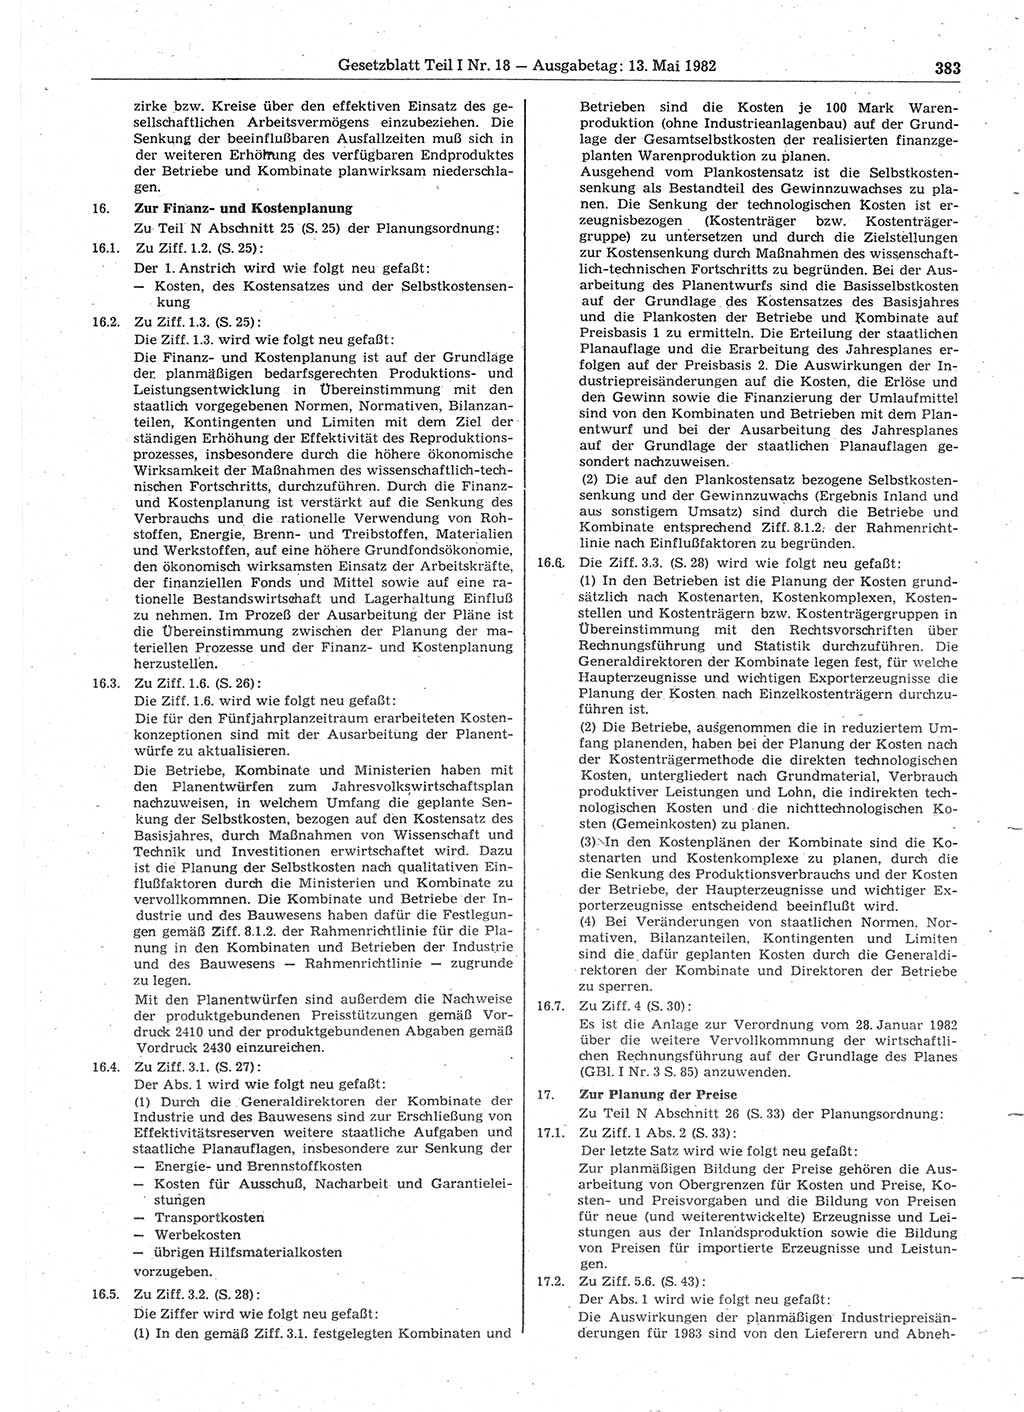 Gesetzblatt (GBl.) der Deutschen Demokratischen Republik (DDR) Teil Ⅰ 1982, Seite 383 (GBl. DDR Ⅰ 1982, S. 383)